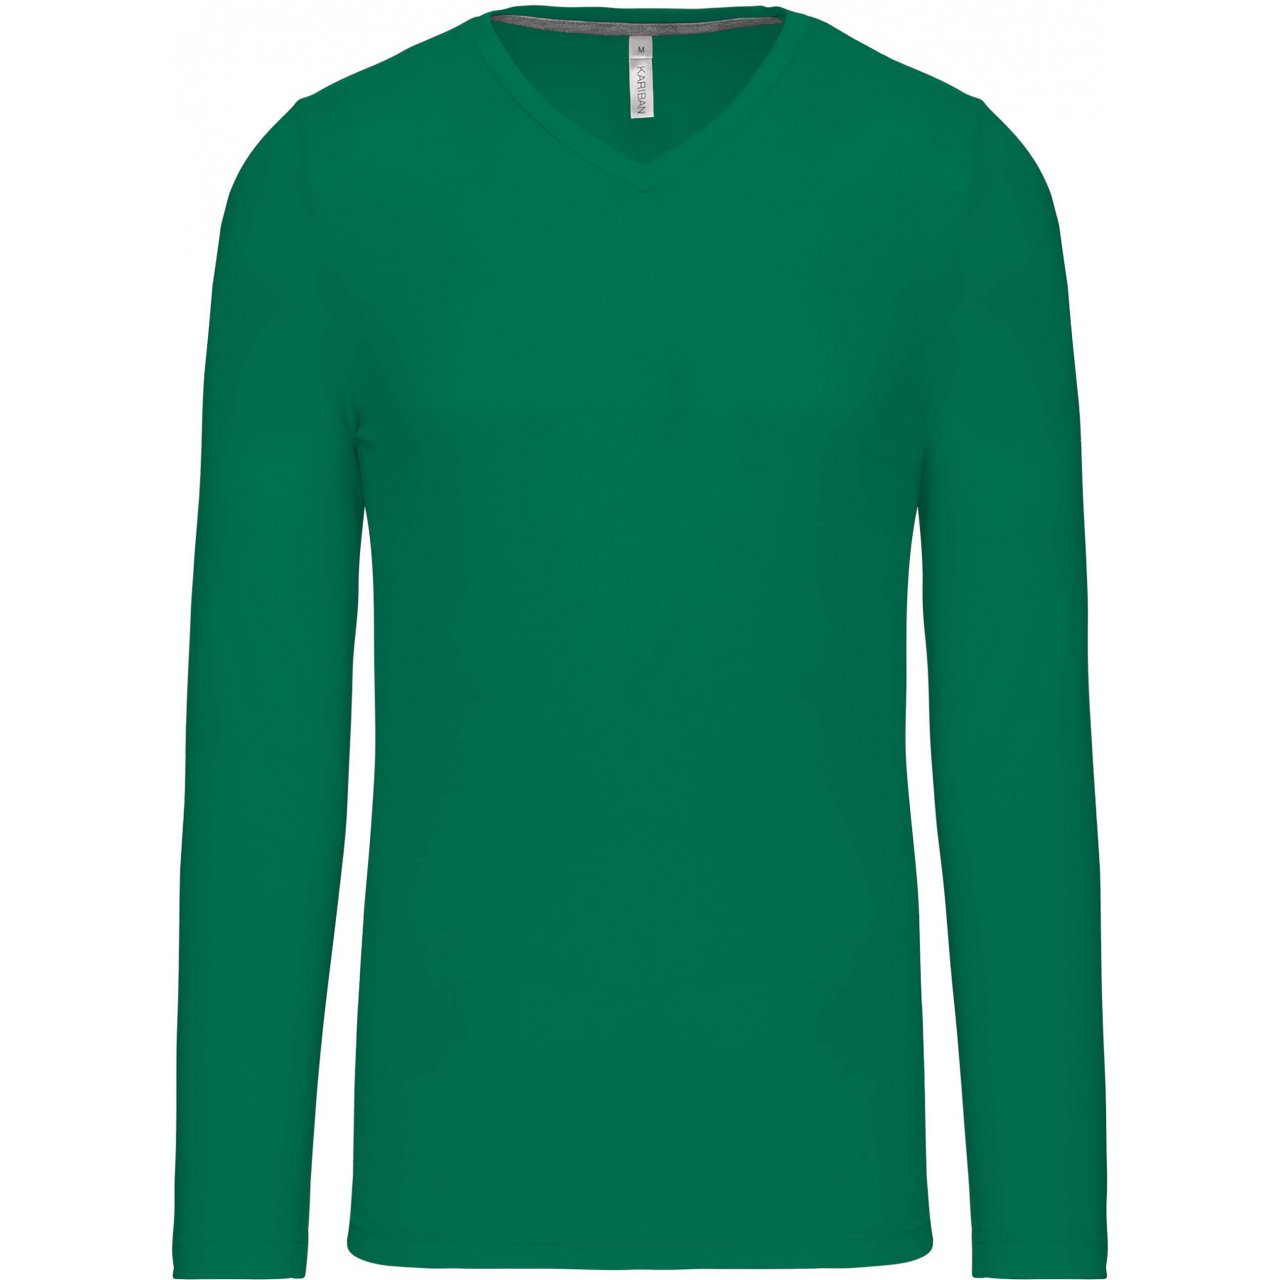 Pánské tričko Kariban dlouhý rukáv V-neck - zelené, L